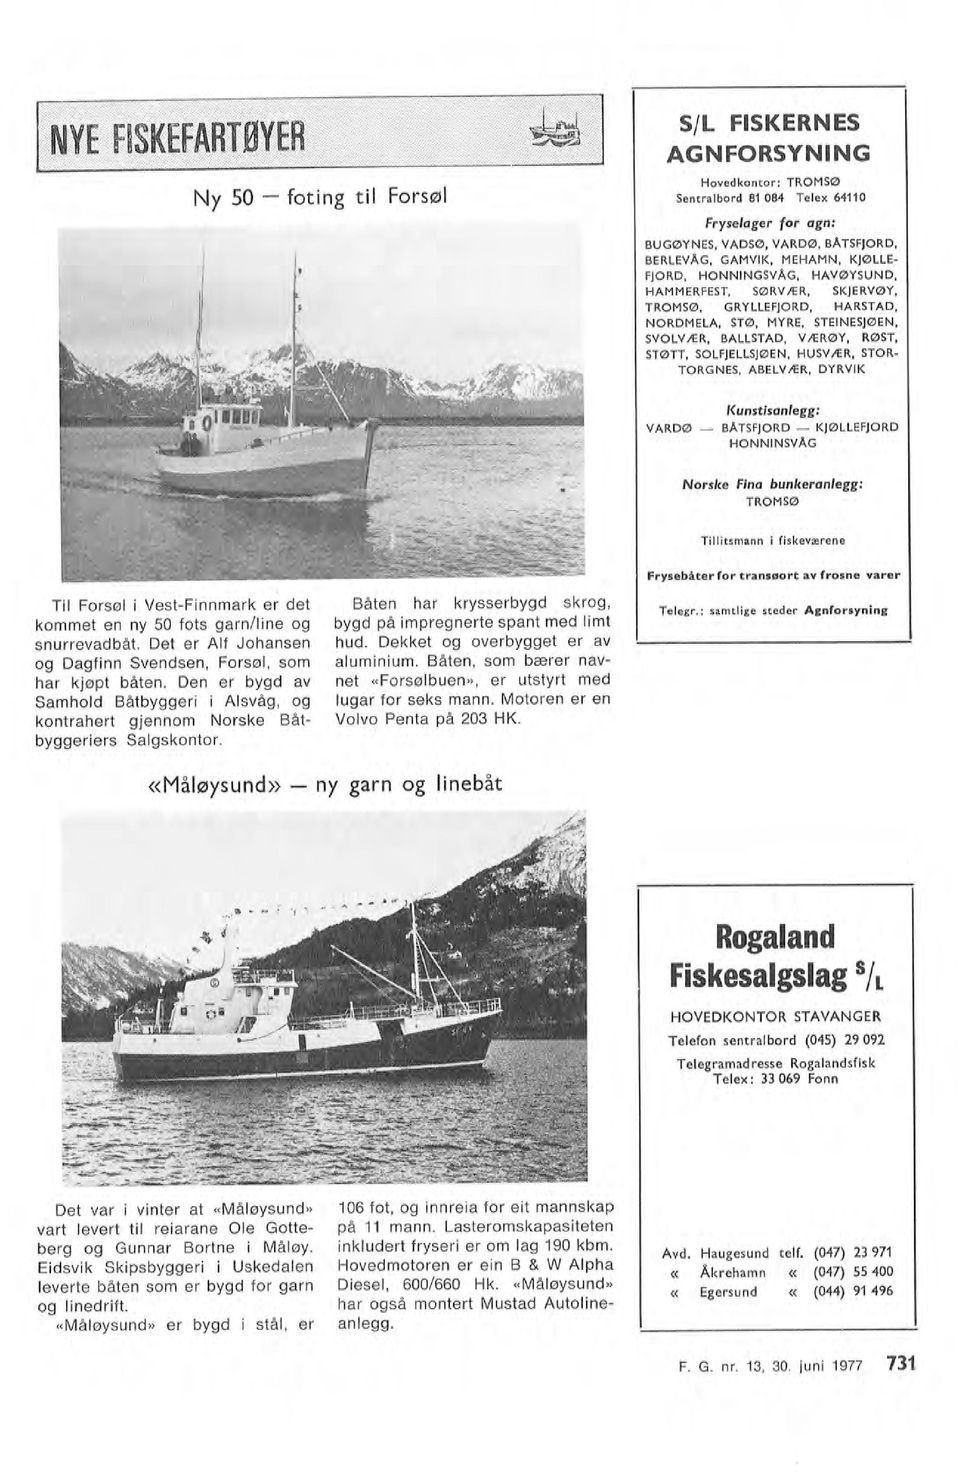 Det er Af Johansen og Dagfinn Svendsen, Forsø, som kontrahert gjennom Norske Båtbyggeriers Sagskontor. Samhod Båtbyggeri i Asvåg, og har kjøpt båten.